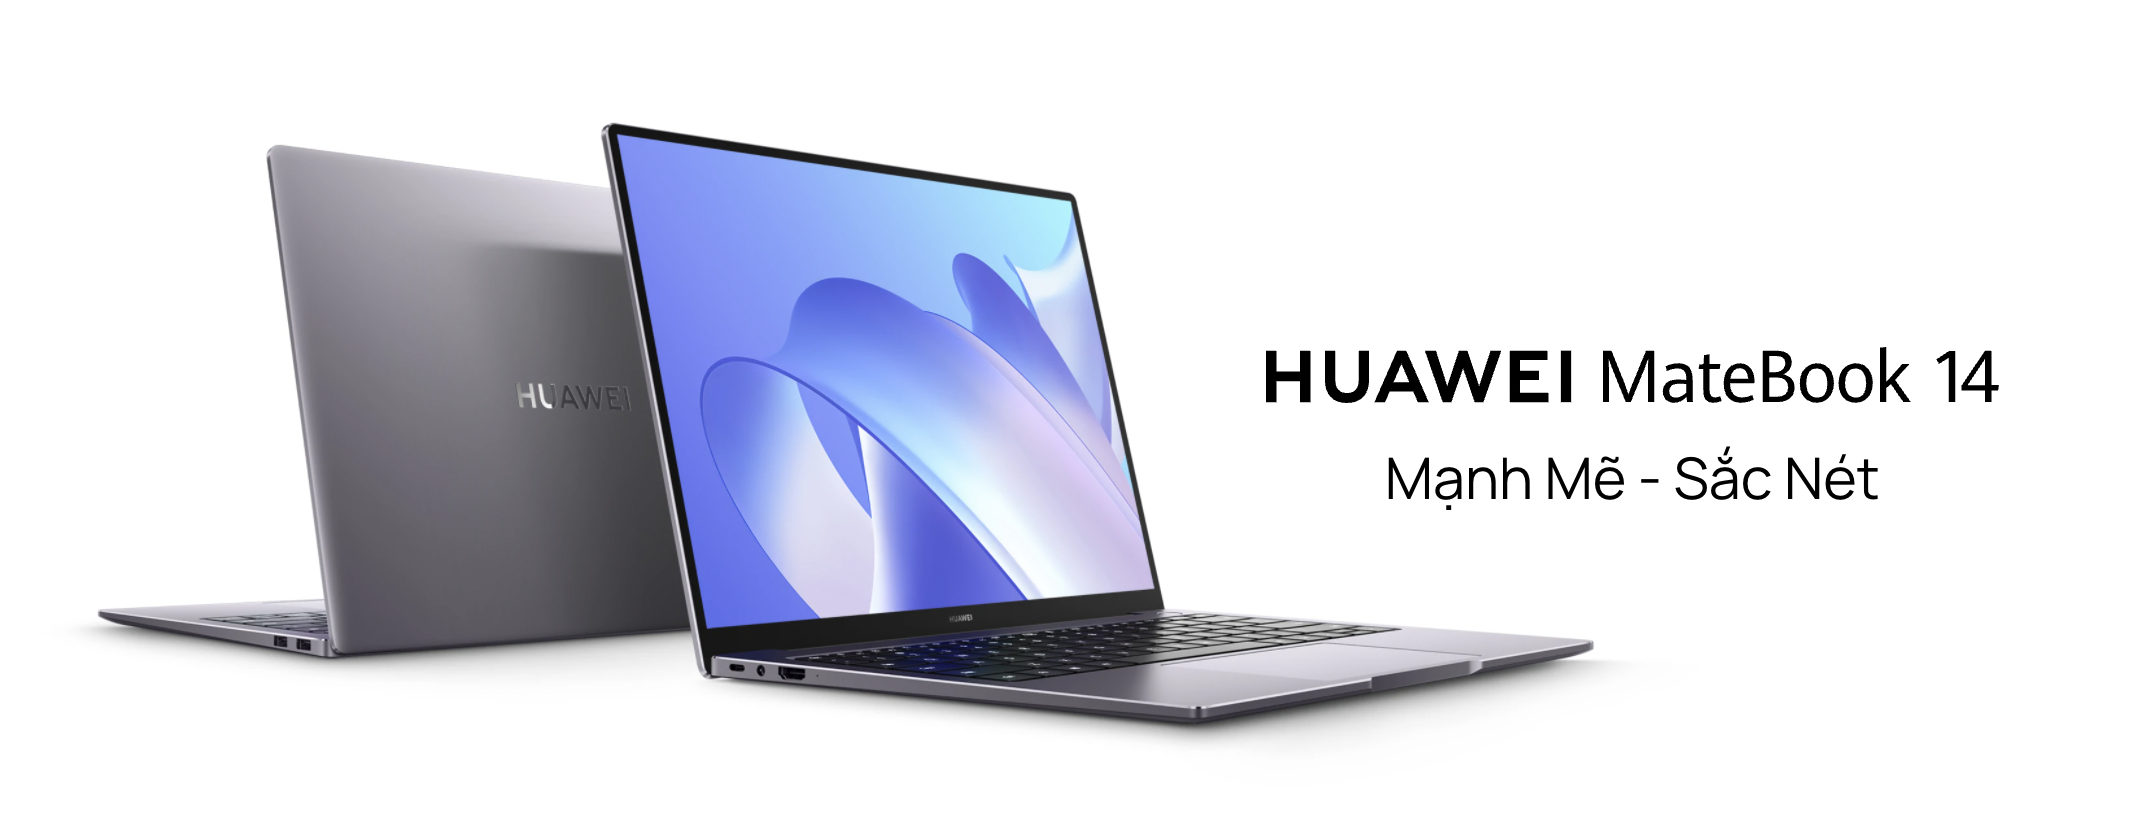 HUAWEI MateBook 14: Máy tính xách tay thời trang với màn hình fullview và hiệu suất làm việc cao